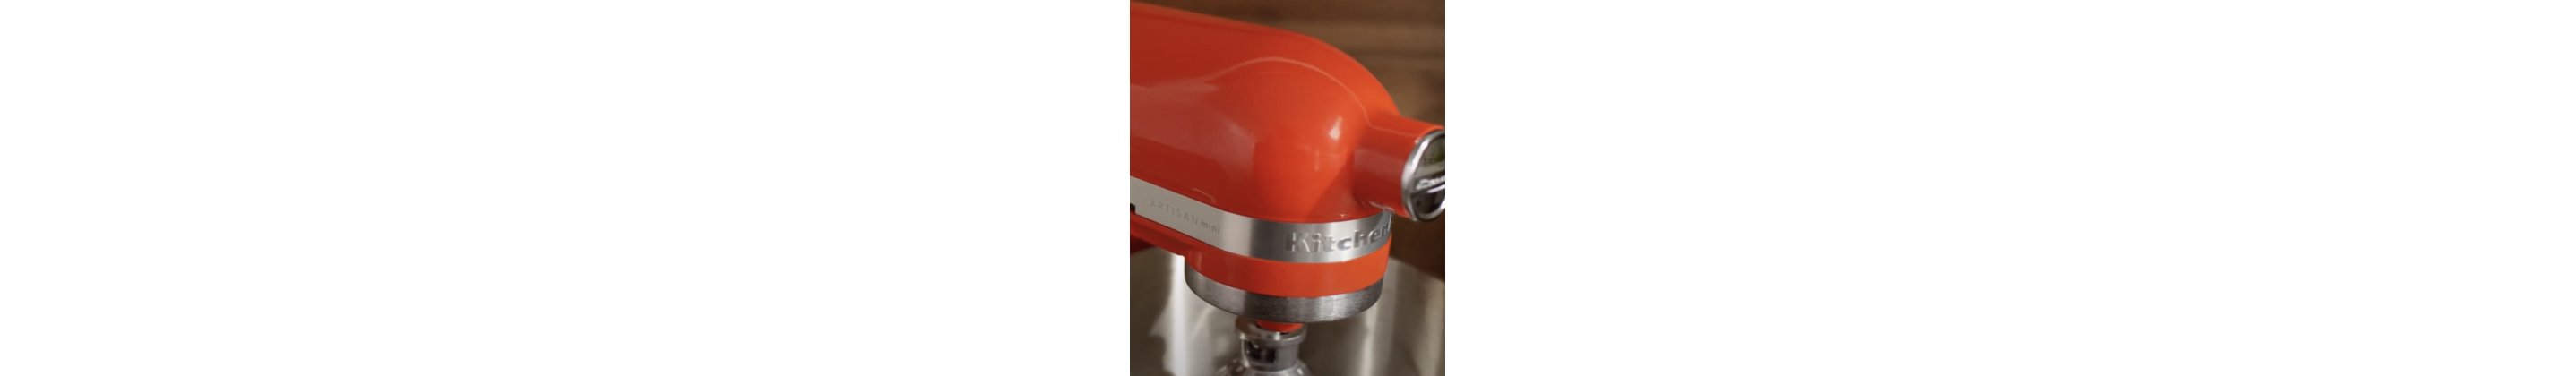 KitchenAid Artisan Mini 3.5 Quart Tilt-Head Stand Mixer, Empire Red  (KSM3311XER) 